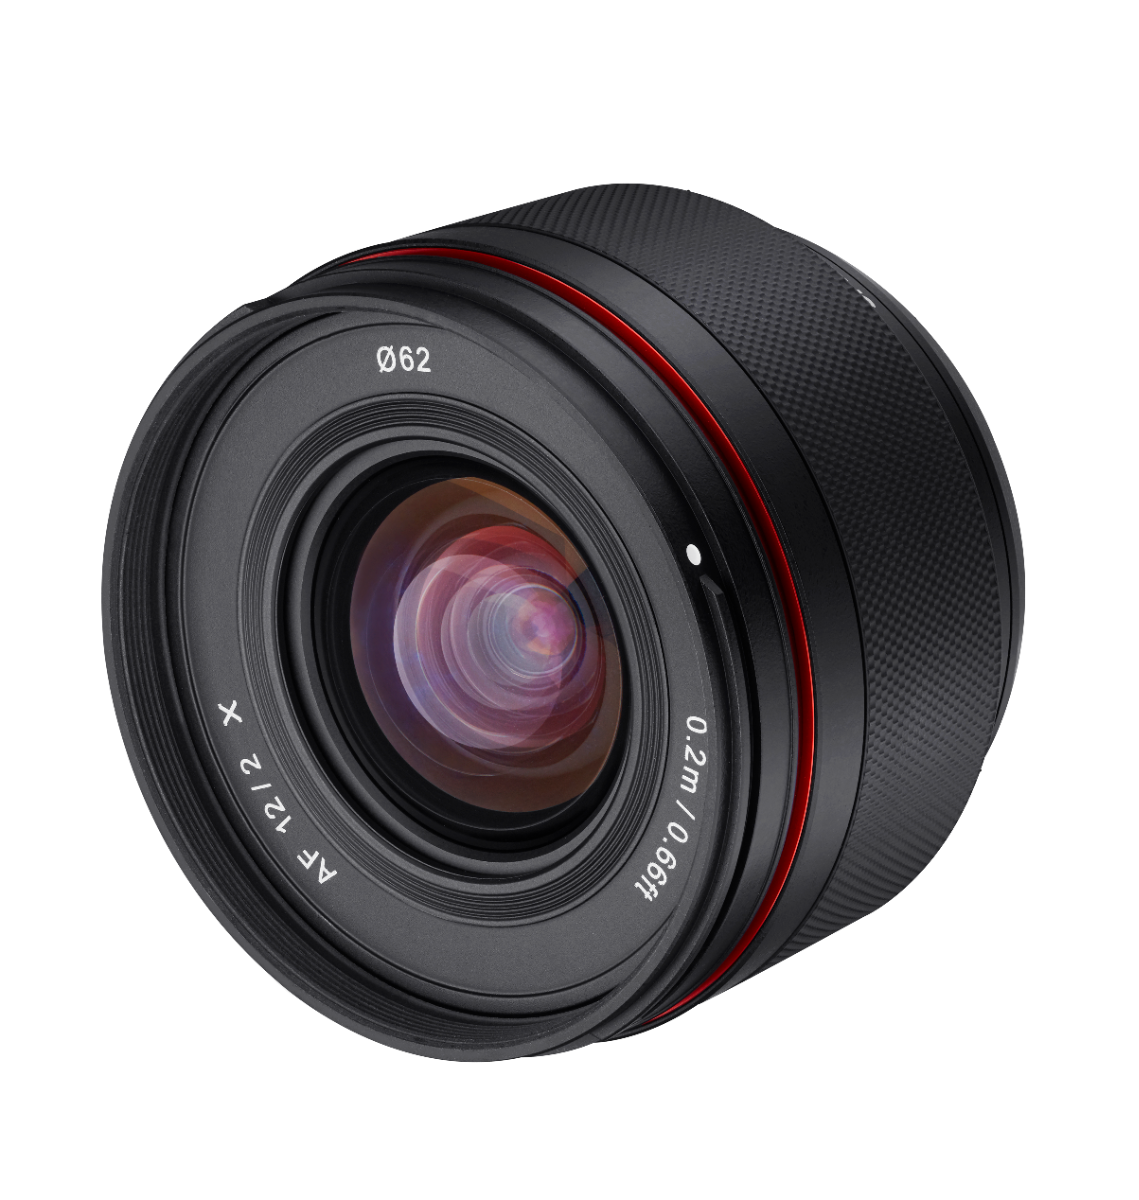 Samyang AF 12mm F2.0 FUJI X Mount Lens